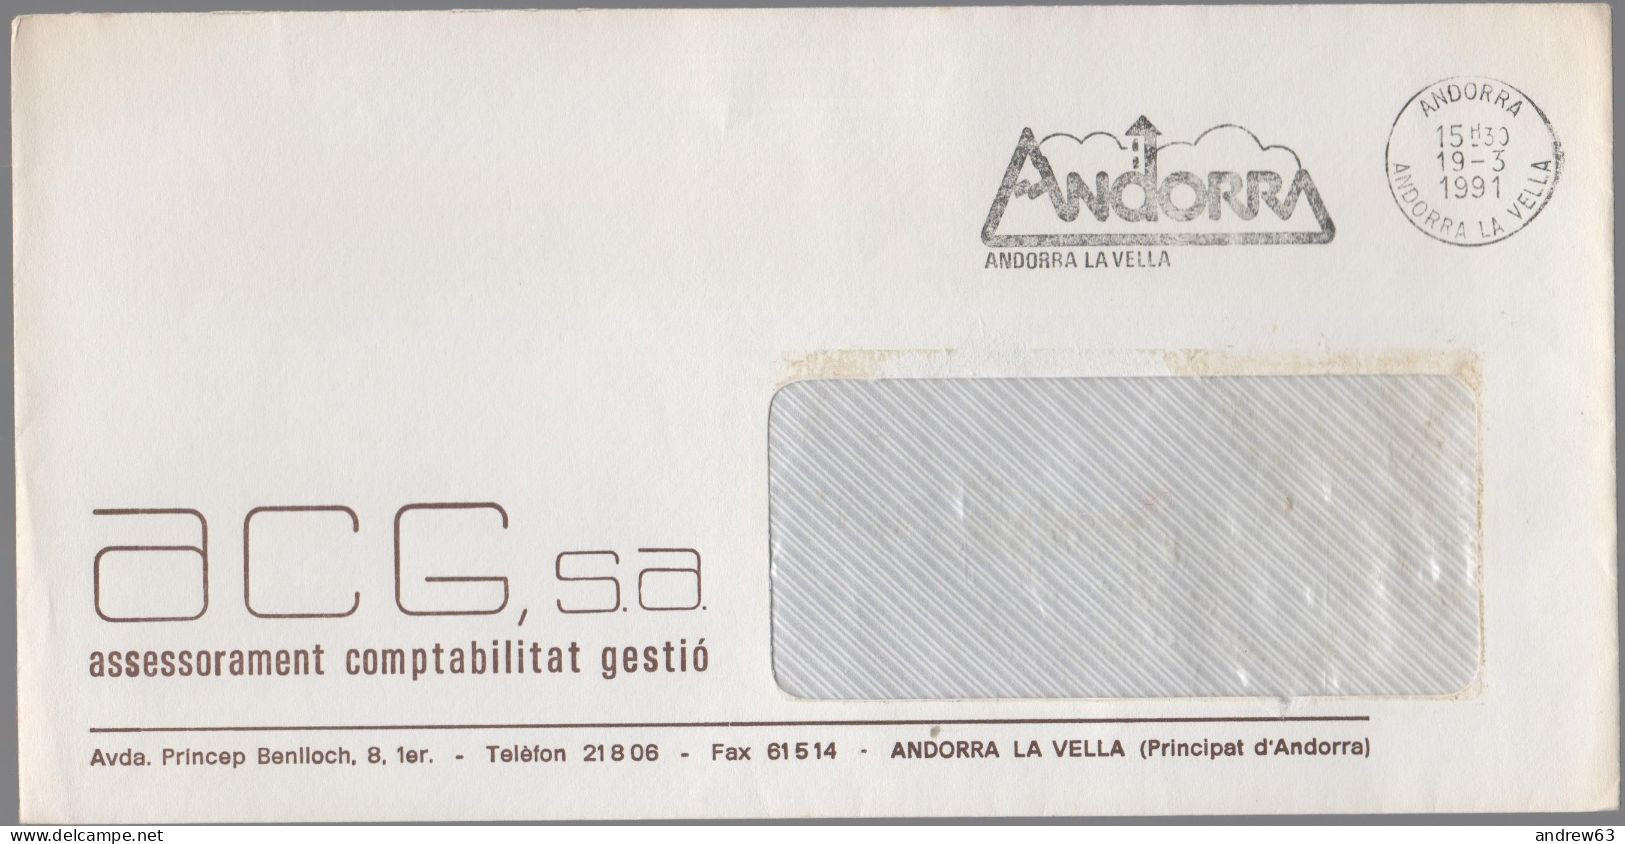 ANDORRA - ANDORRE - 1991 - Lettre En Franchise + Flamme - ACG, S.a. - Viaggiata Da Andorra La Vella - Briefe U. Dokumente